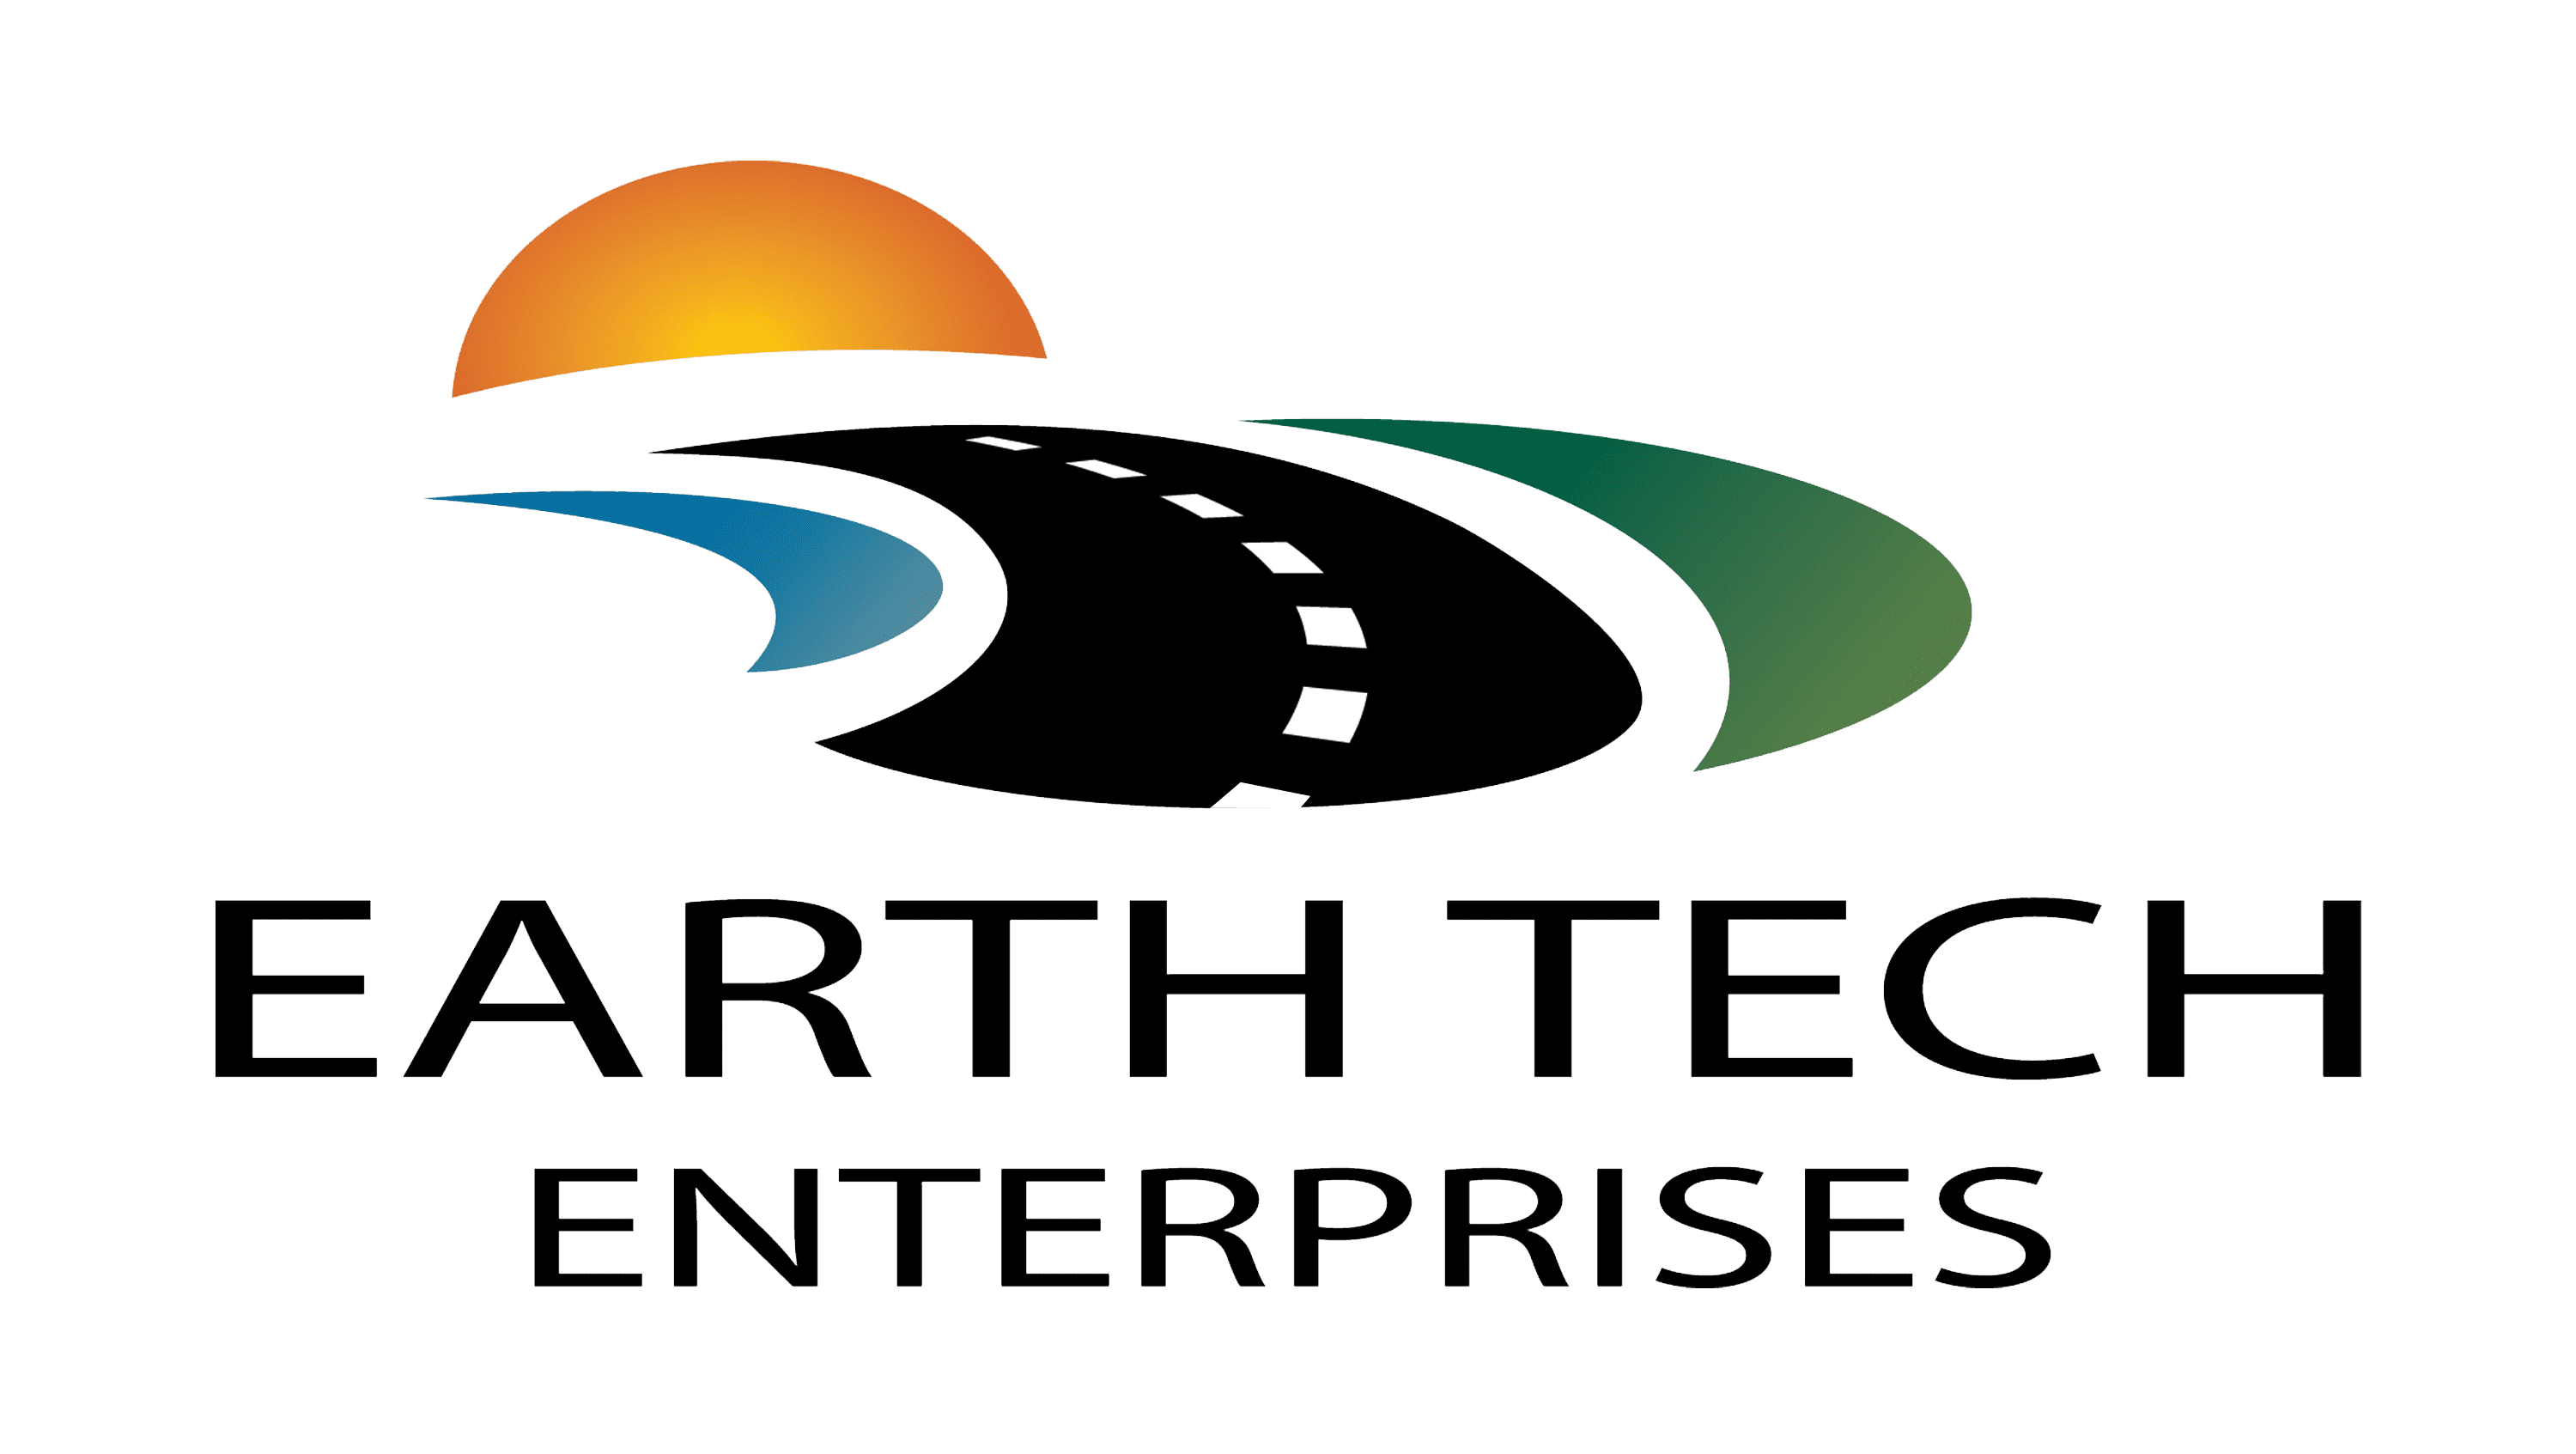 EarthTech Enterprises